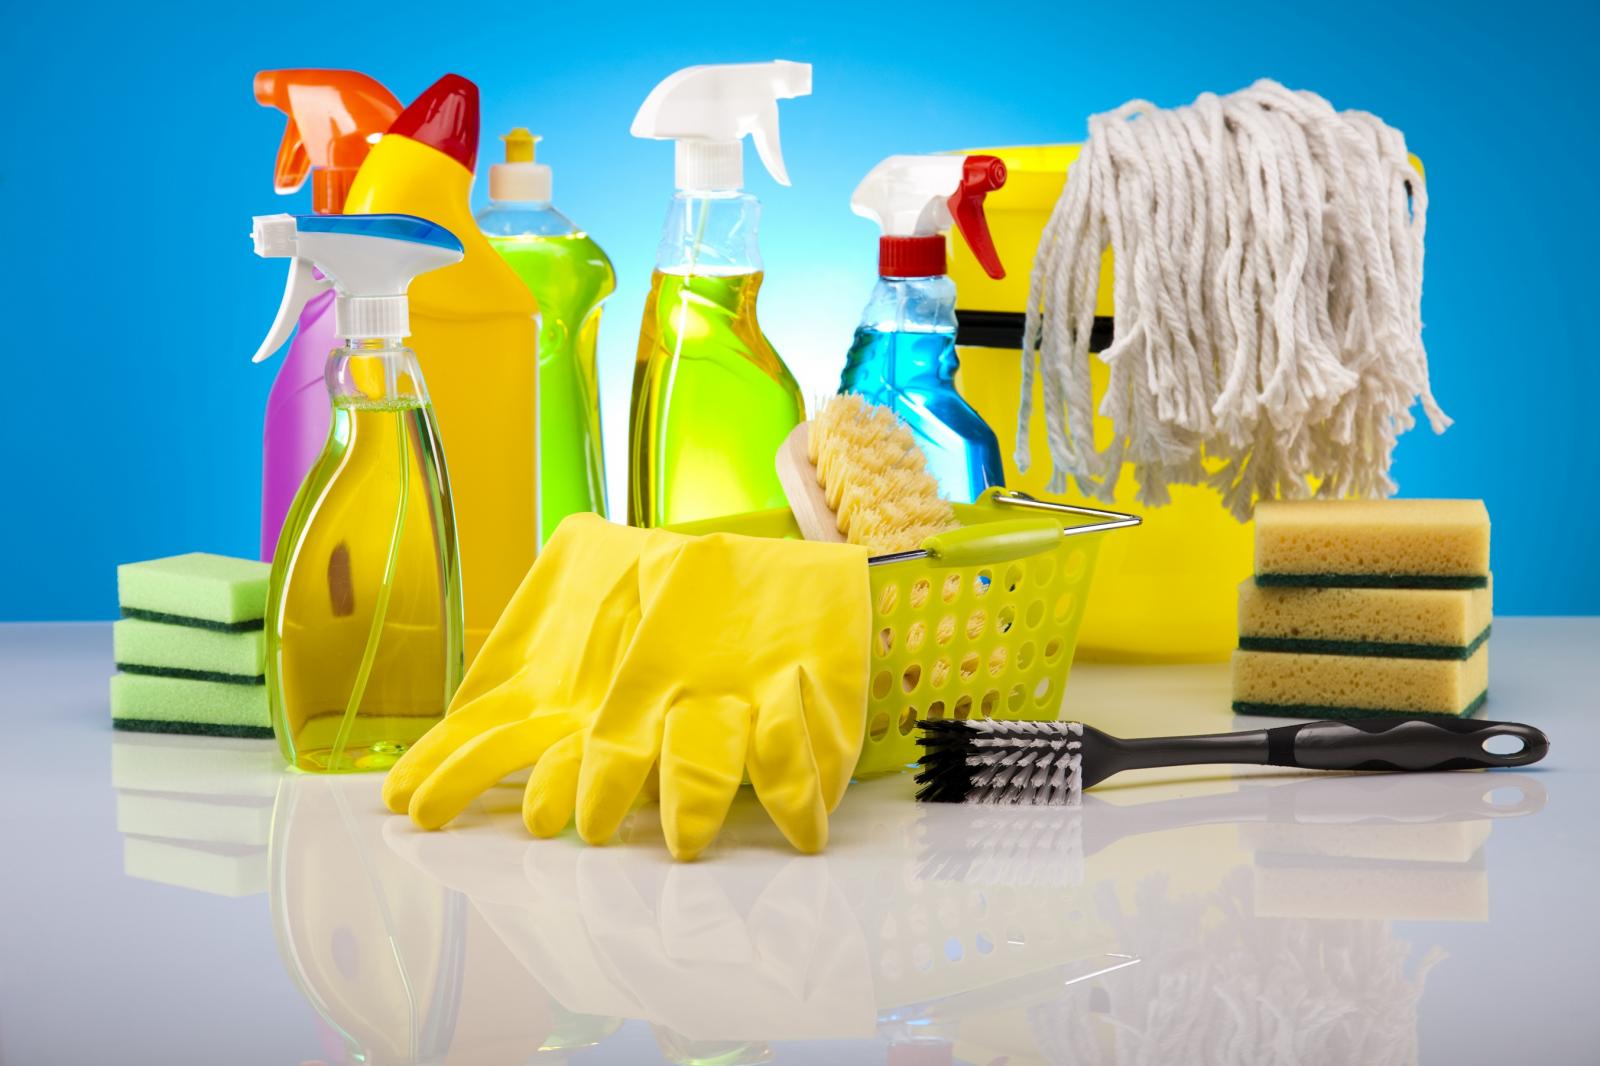 Бытовая техника для уборки: инновации на службе чистоты. cтатьи, тесты, обзоры